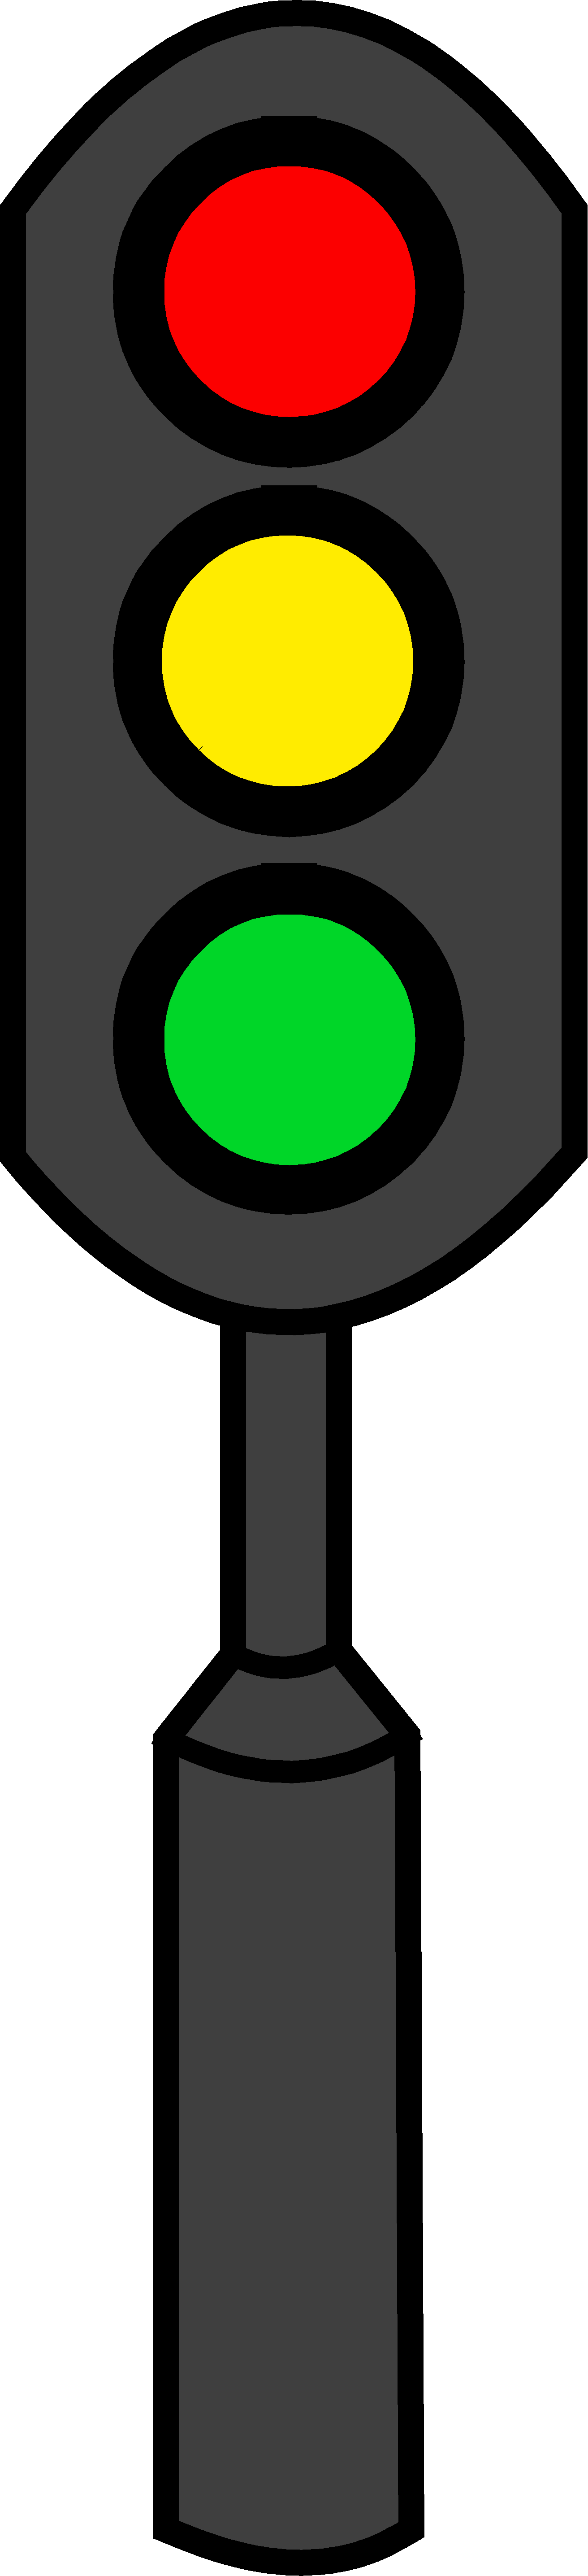 Light Clip Art - Traffic Light Clipart